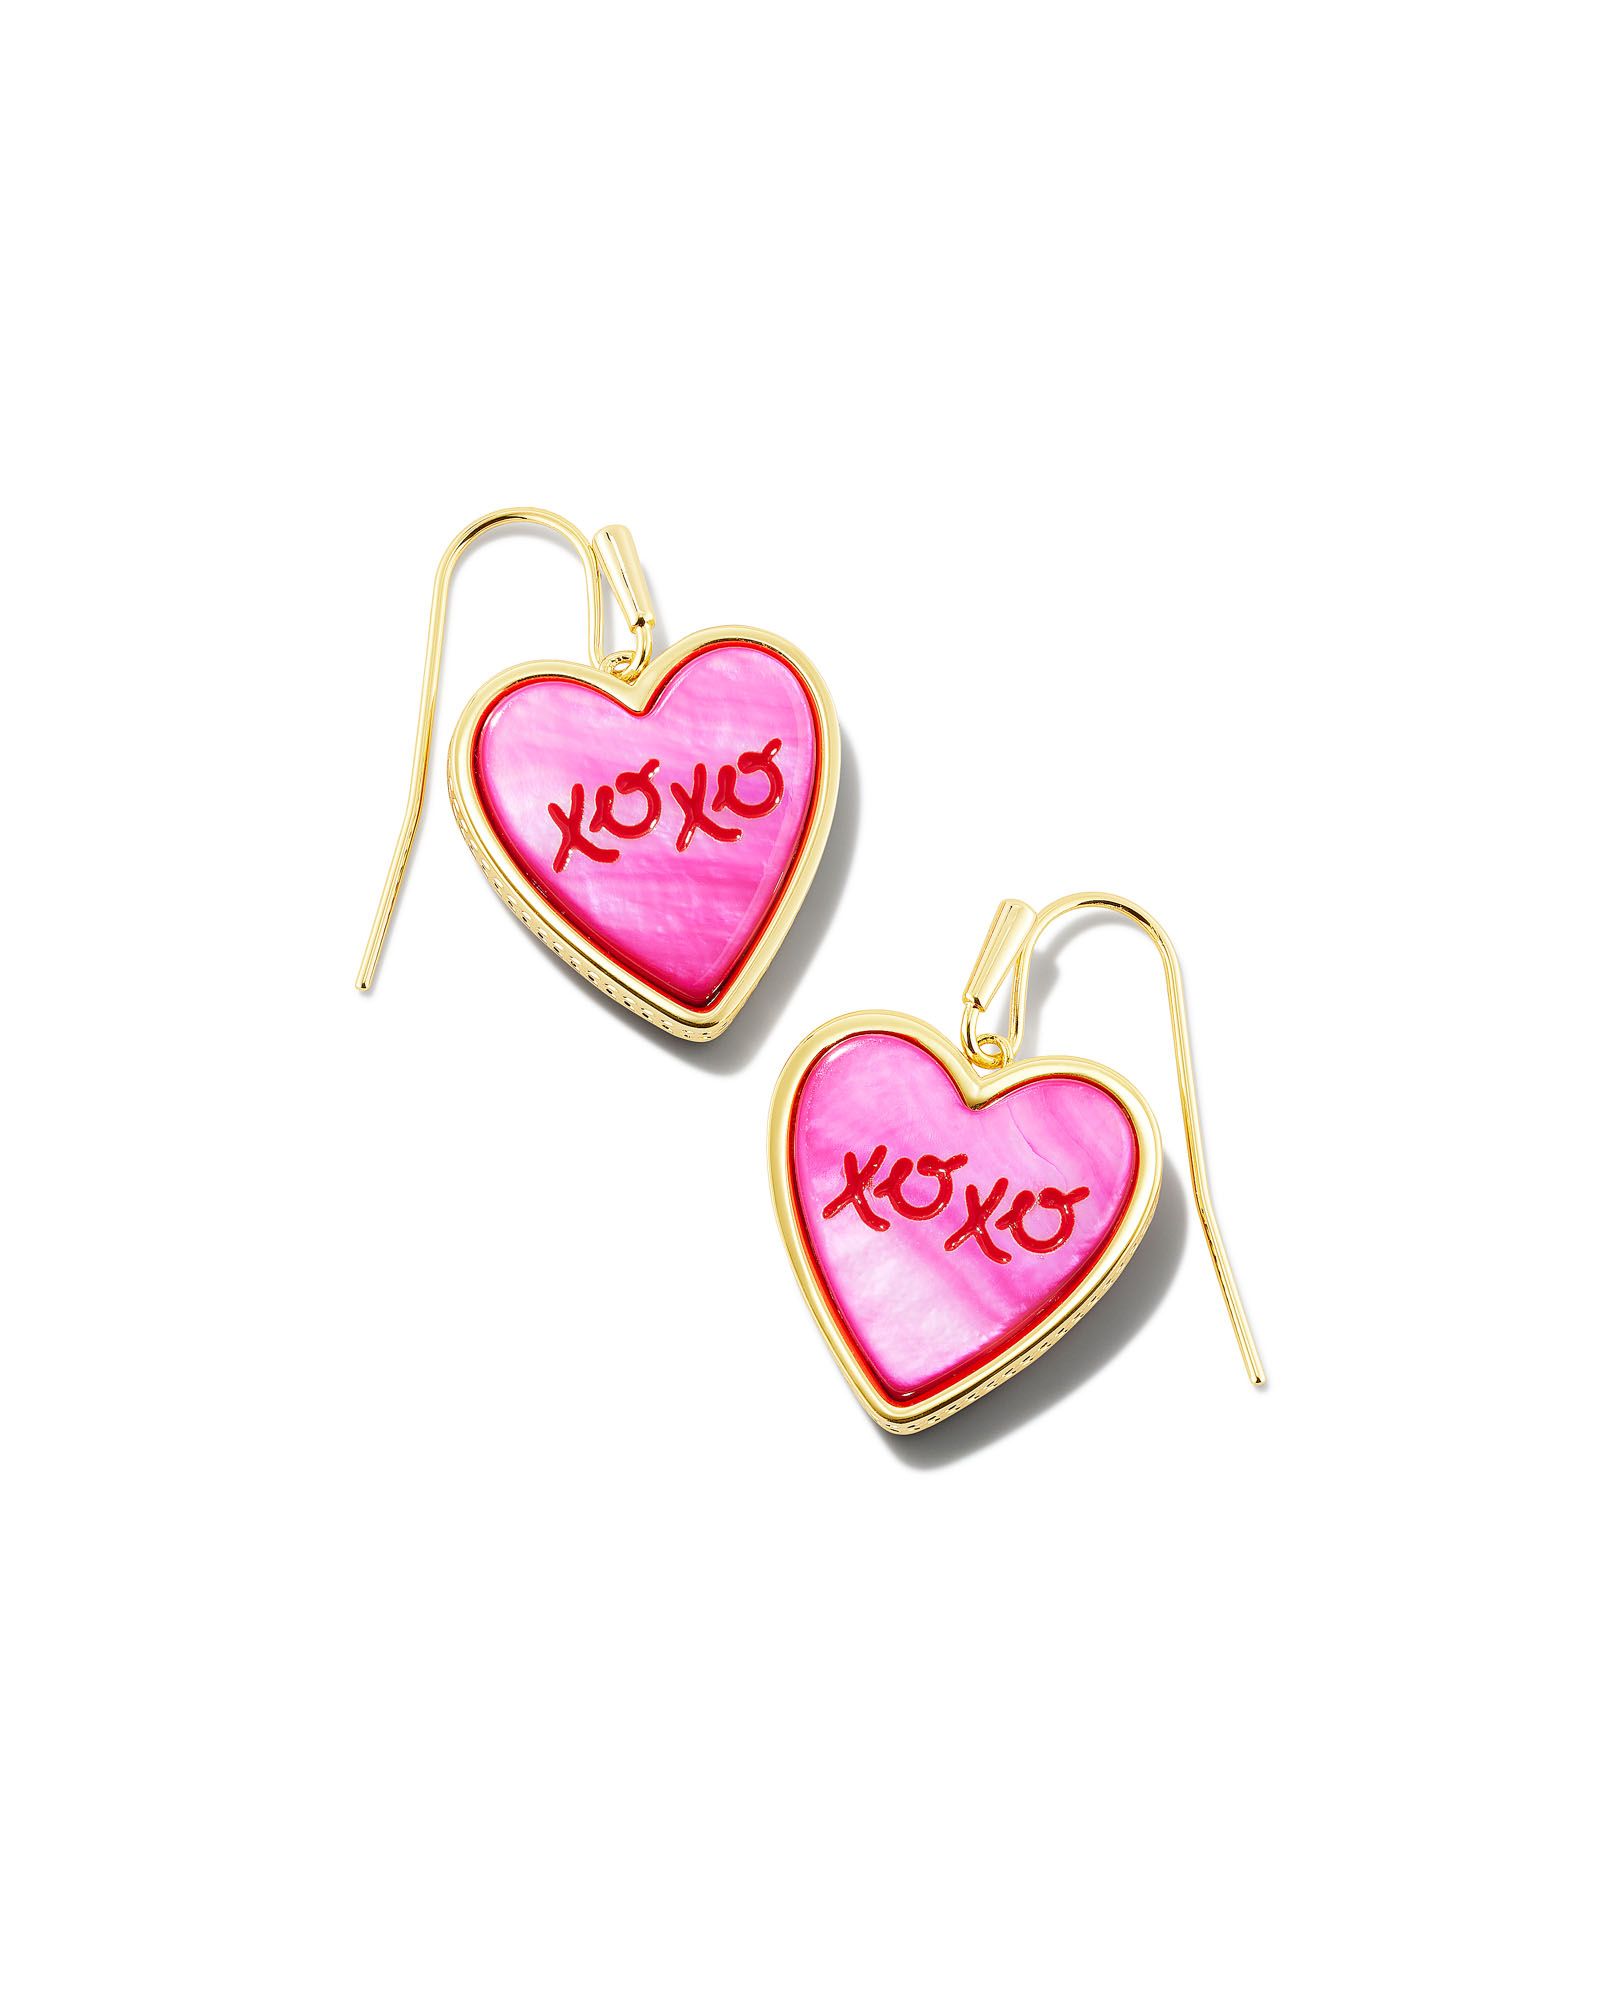 XOXO Gold Drop Earrings in Hot Pink Mother-of-Pearl | Kendra Scott | Kendra Scott